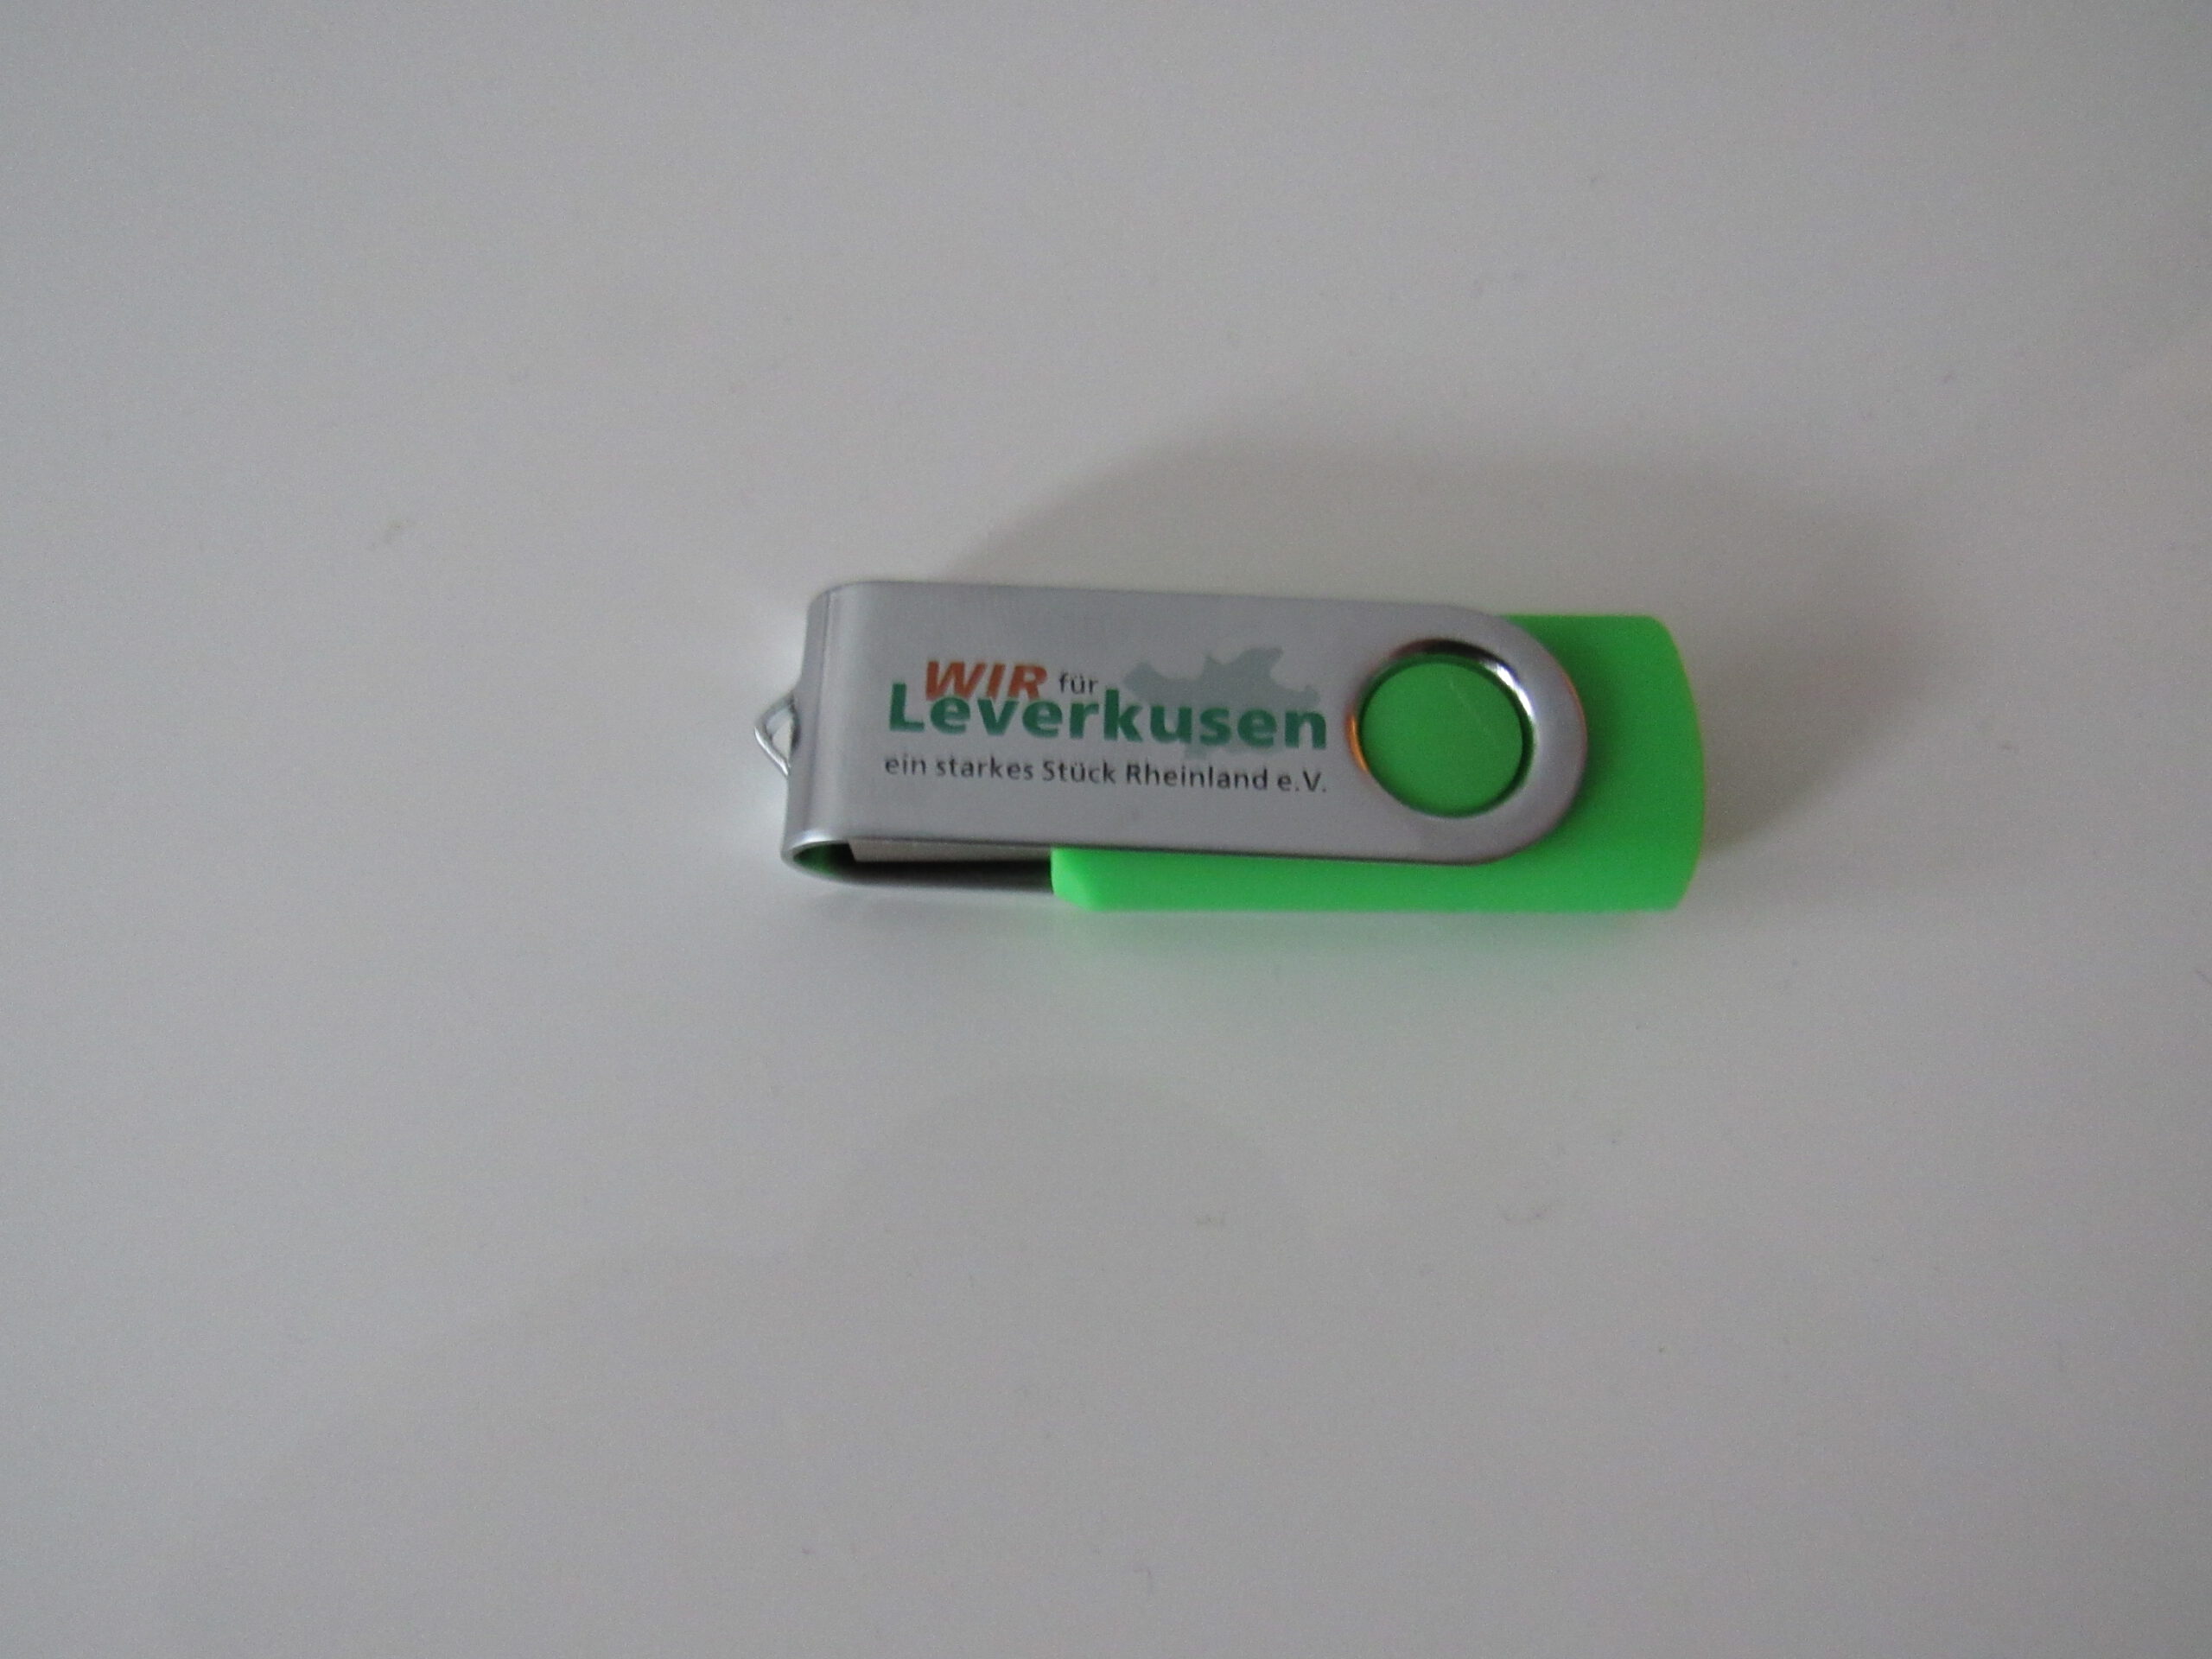 USB-Stick Leverkusen 6,00€